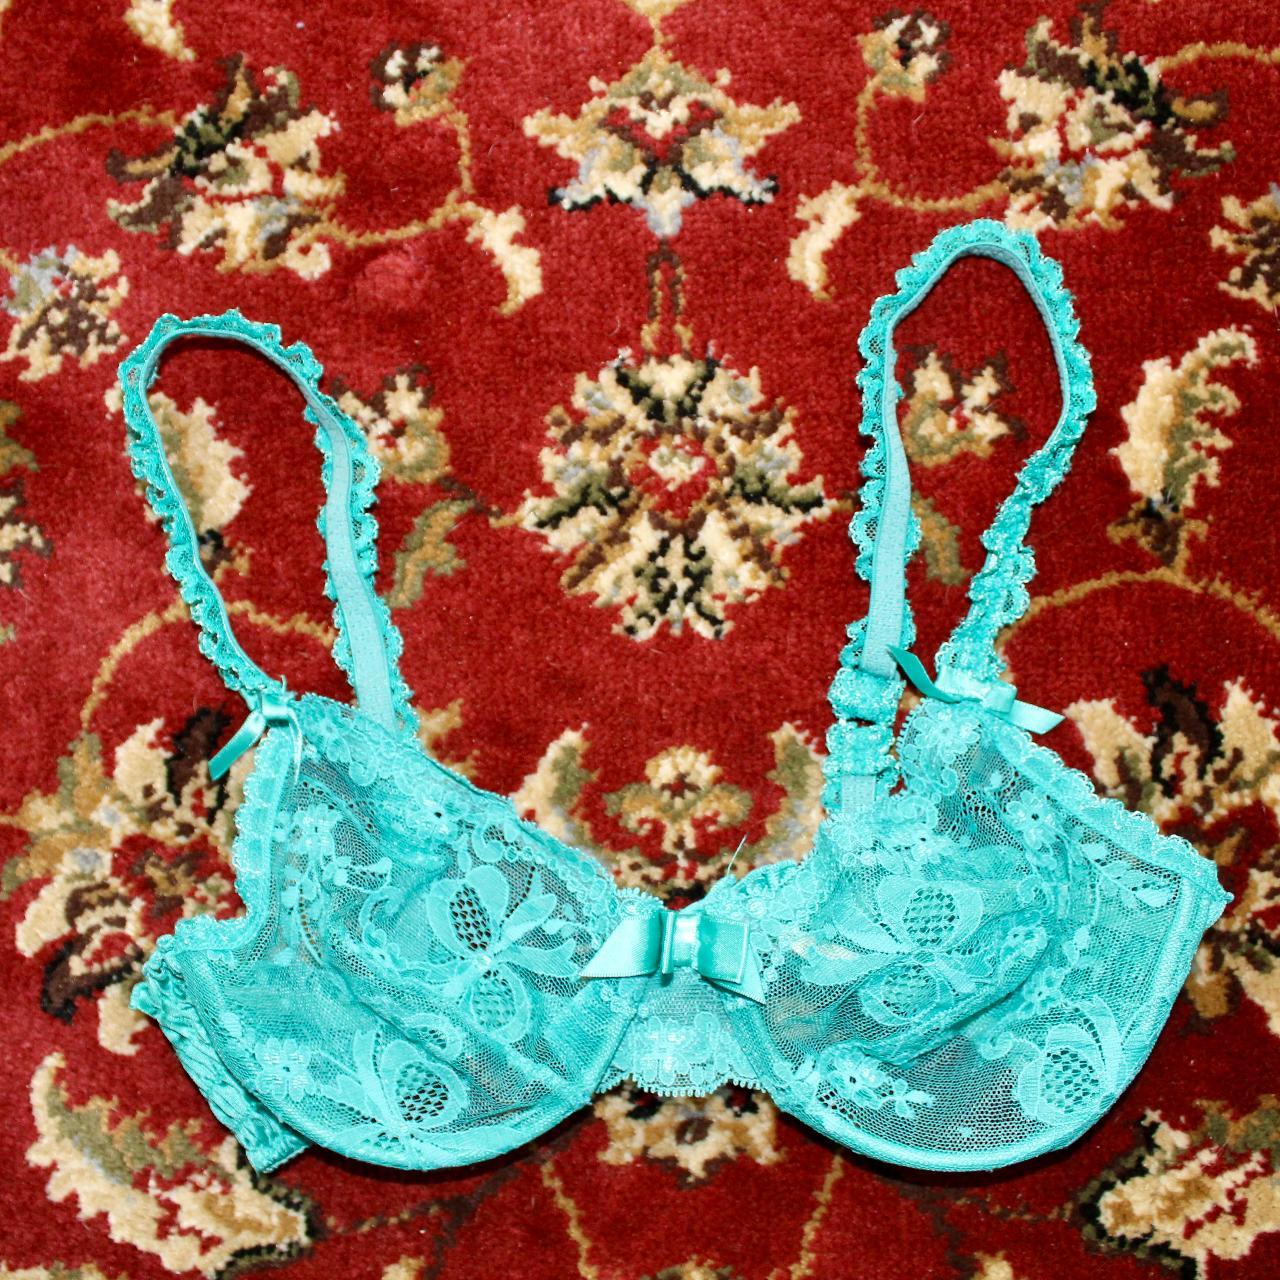 blue lace Victoria's Secret set 34b, s/m - Depop